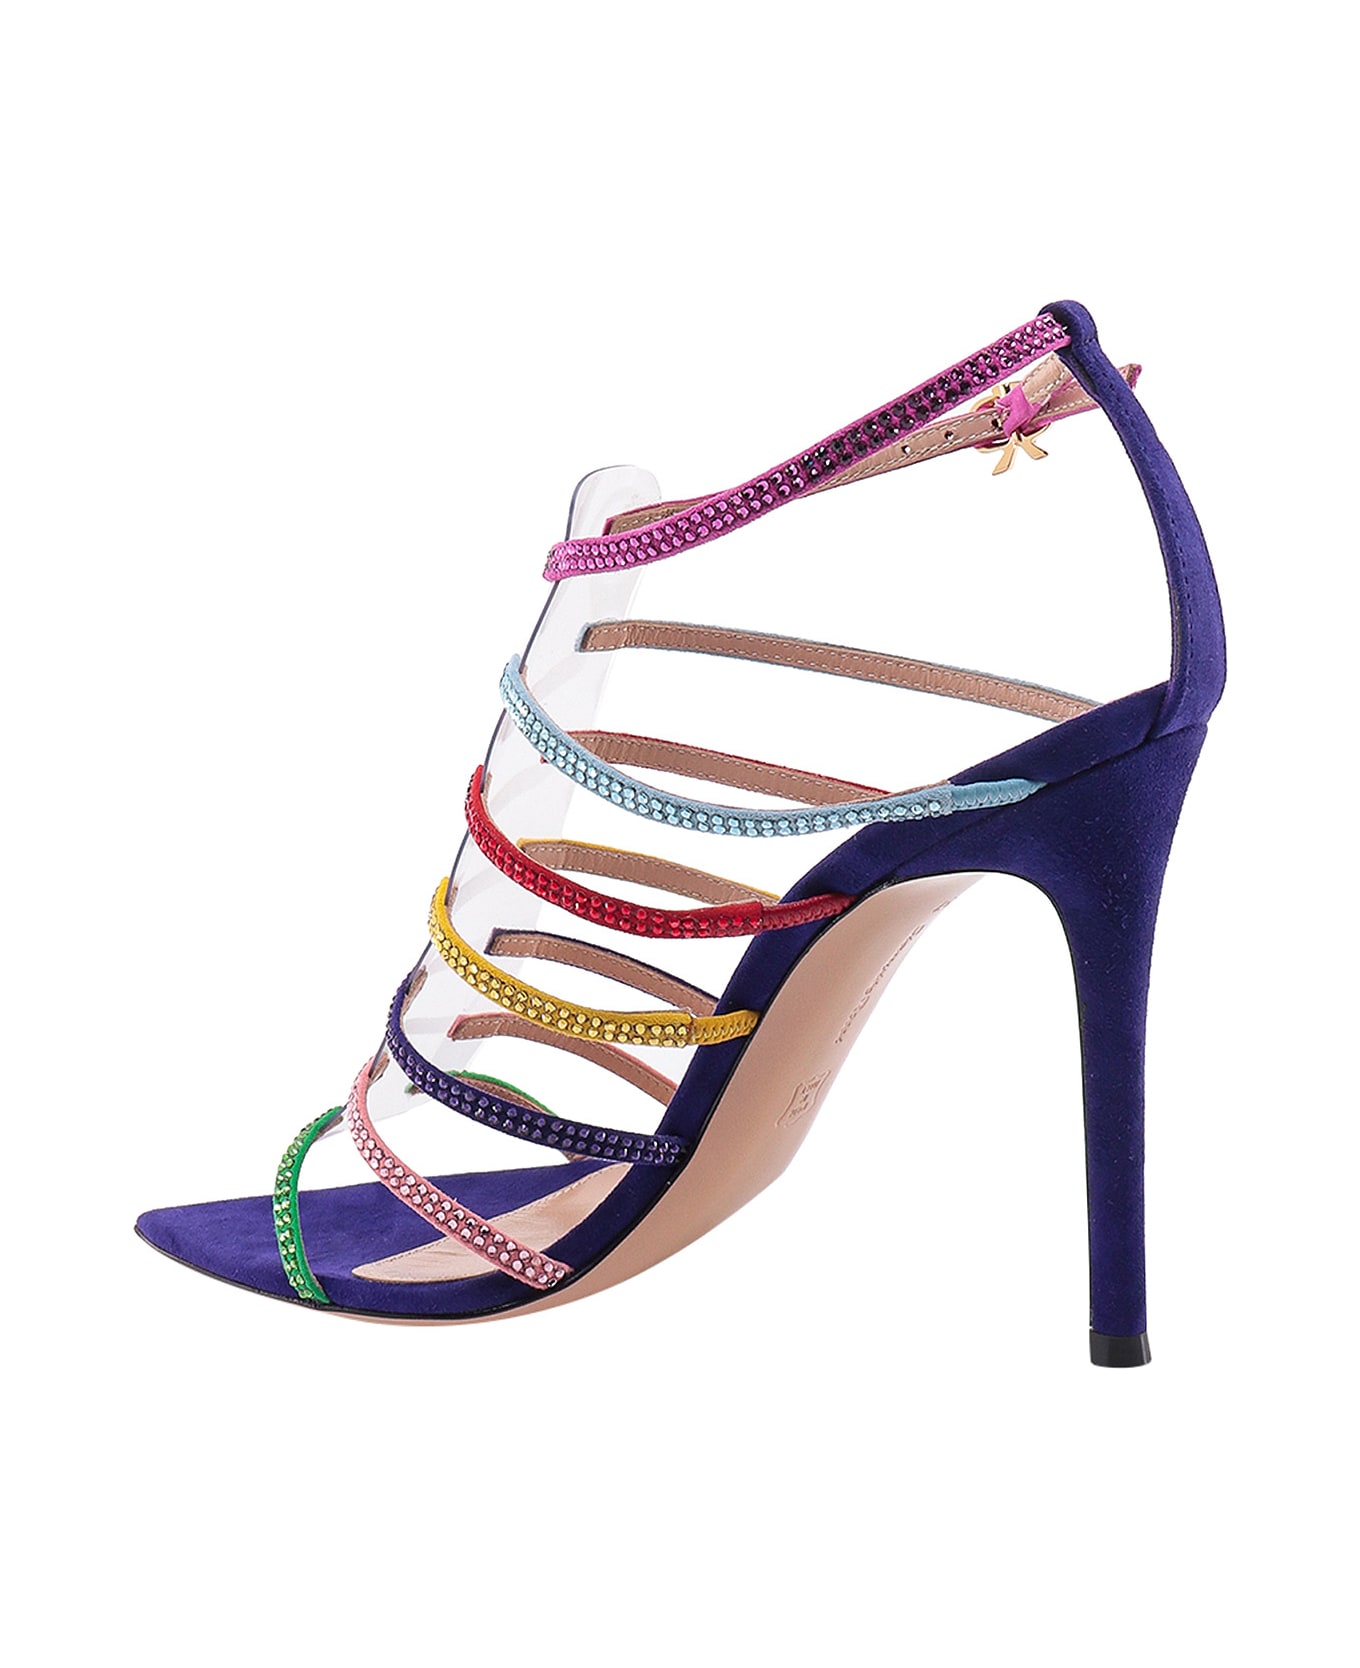 Gianvito Rossi Mirage Sandals - Multicolor サンダル